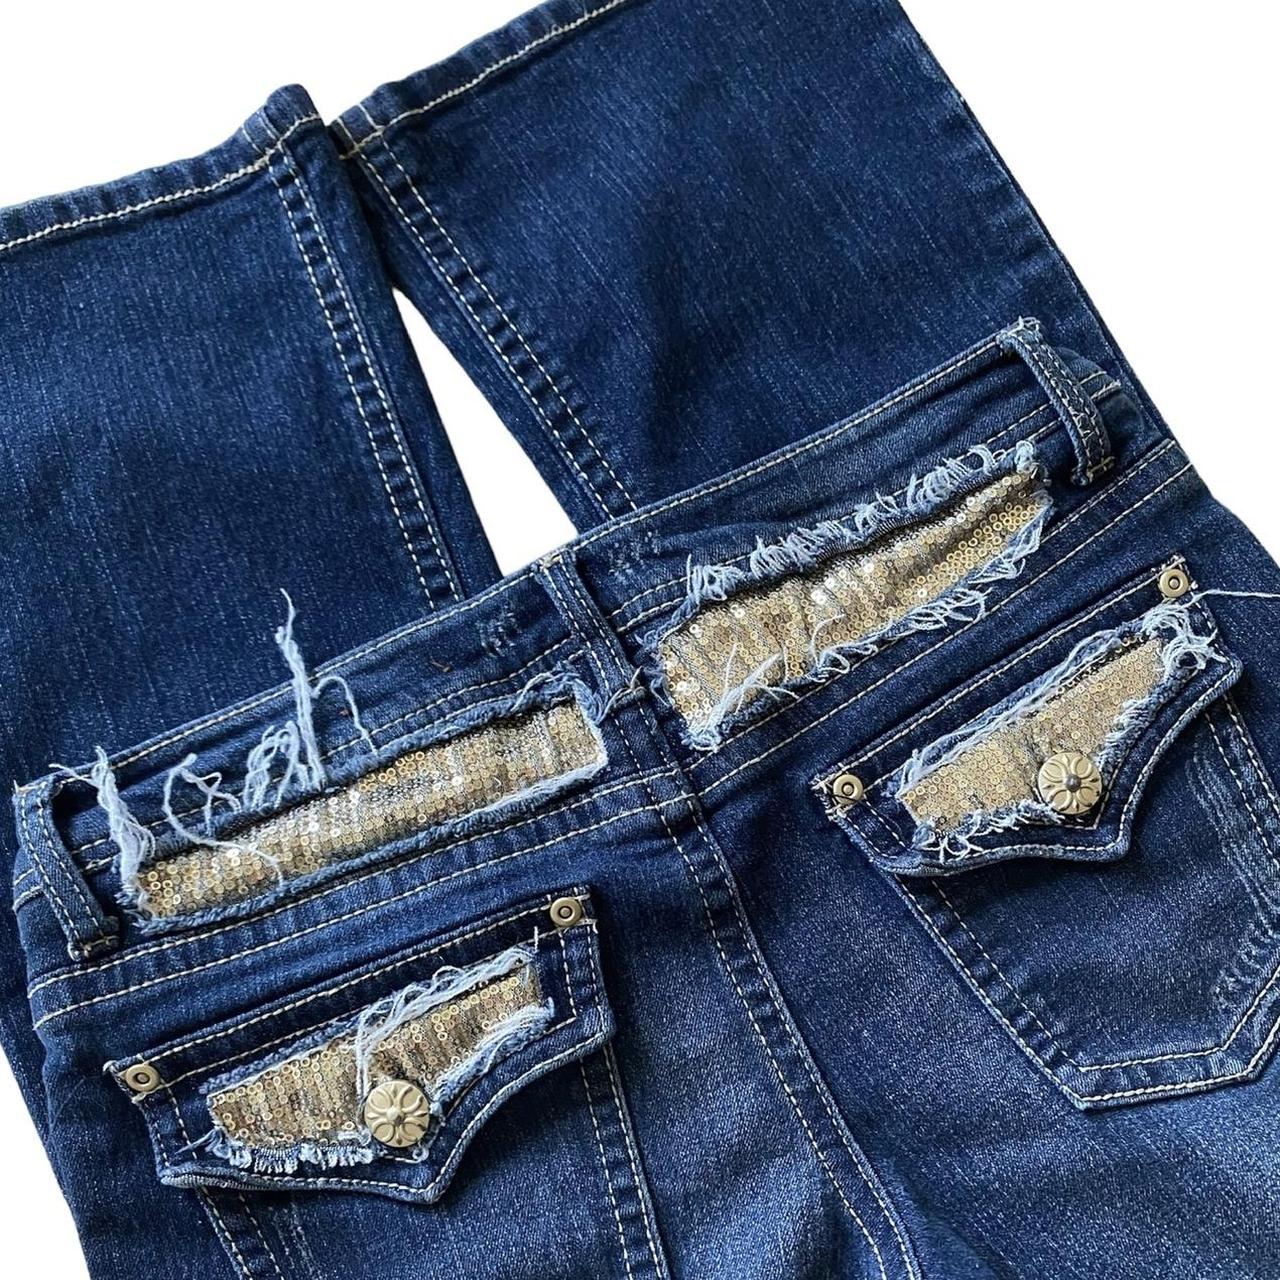 gorg jeans gold sequin detailing on backside... -